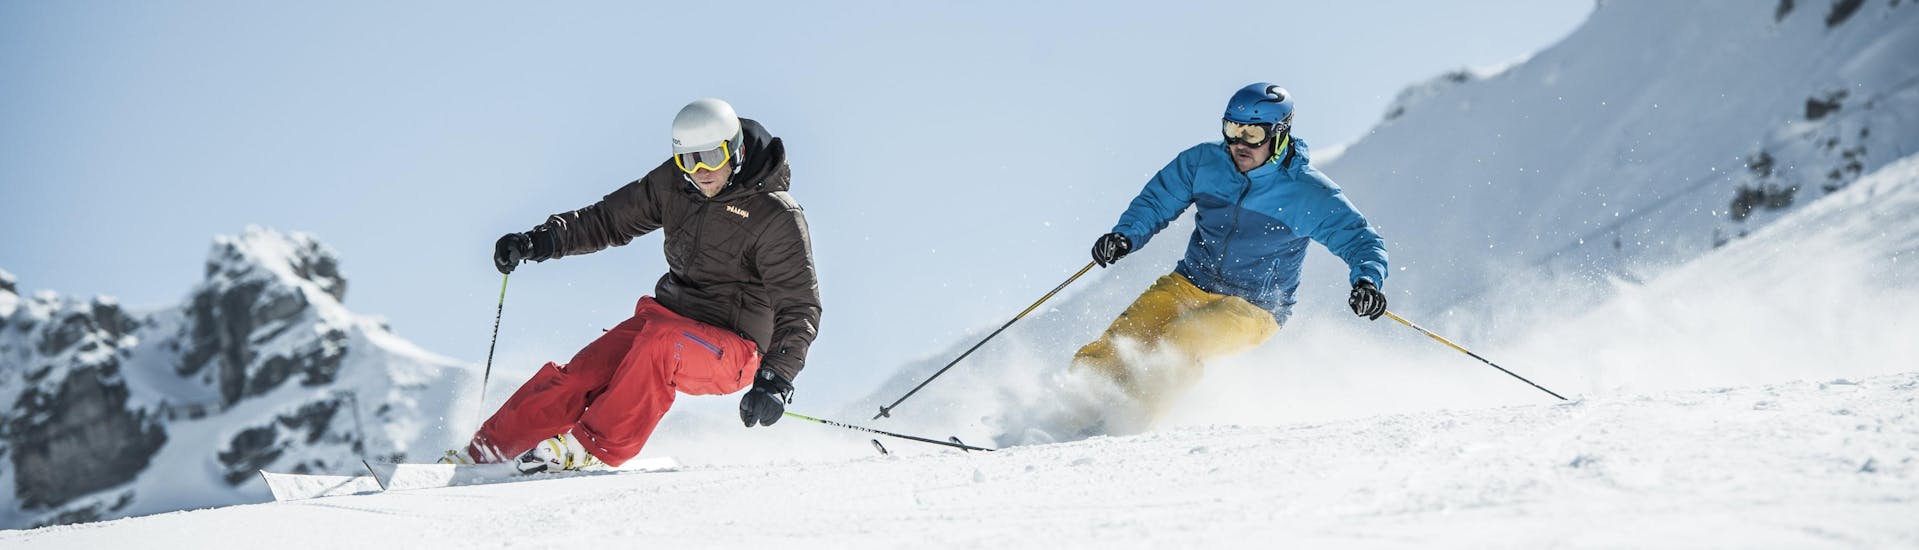 Un skieur travaille sa technique de ski avec son moniteur de ski lors d'un cours particulier de ski dans la destination de ski Maloja.